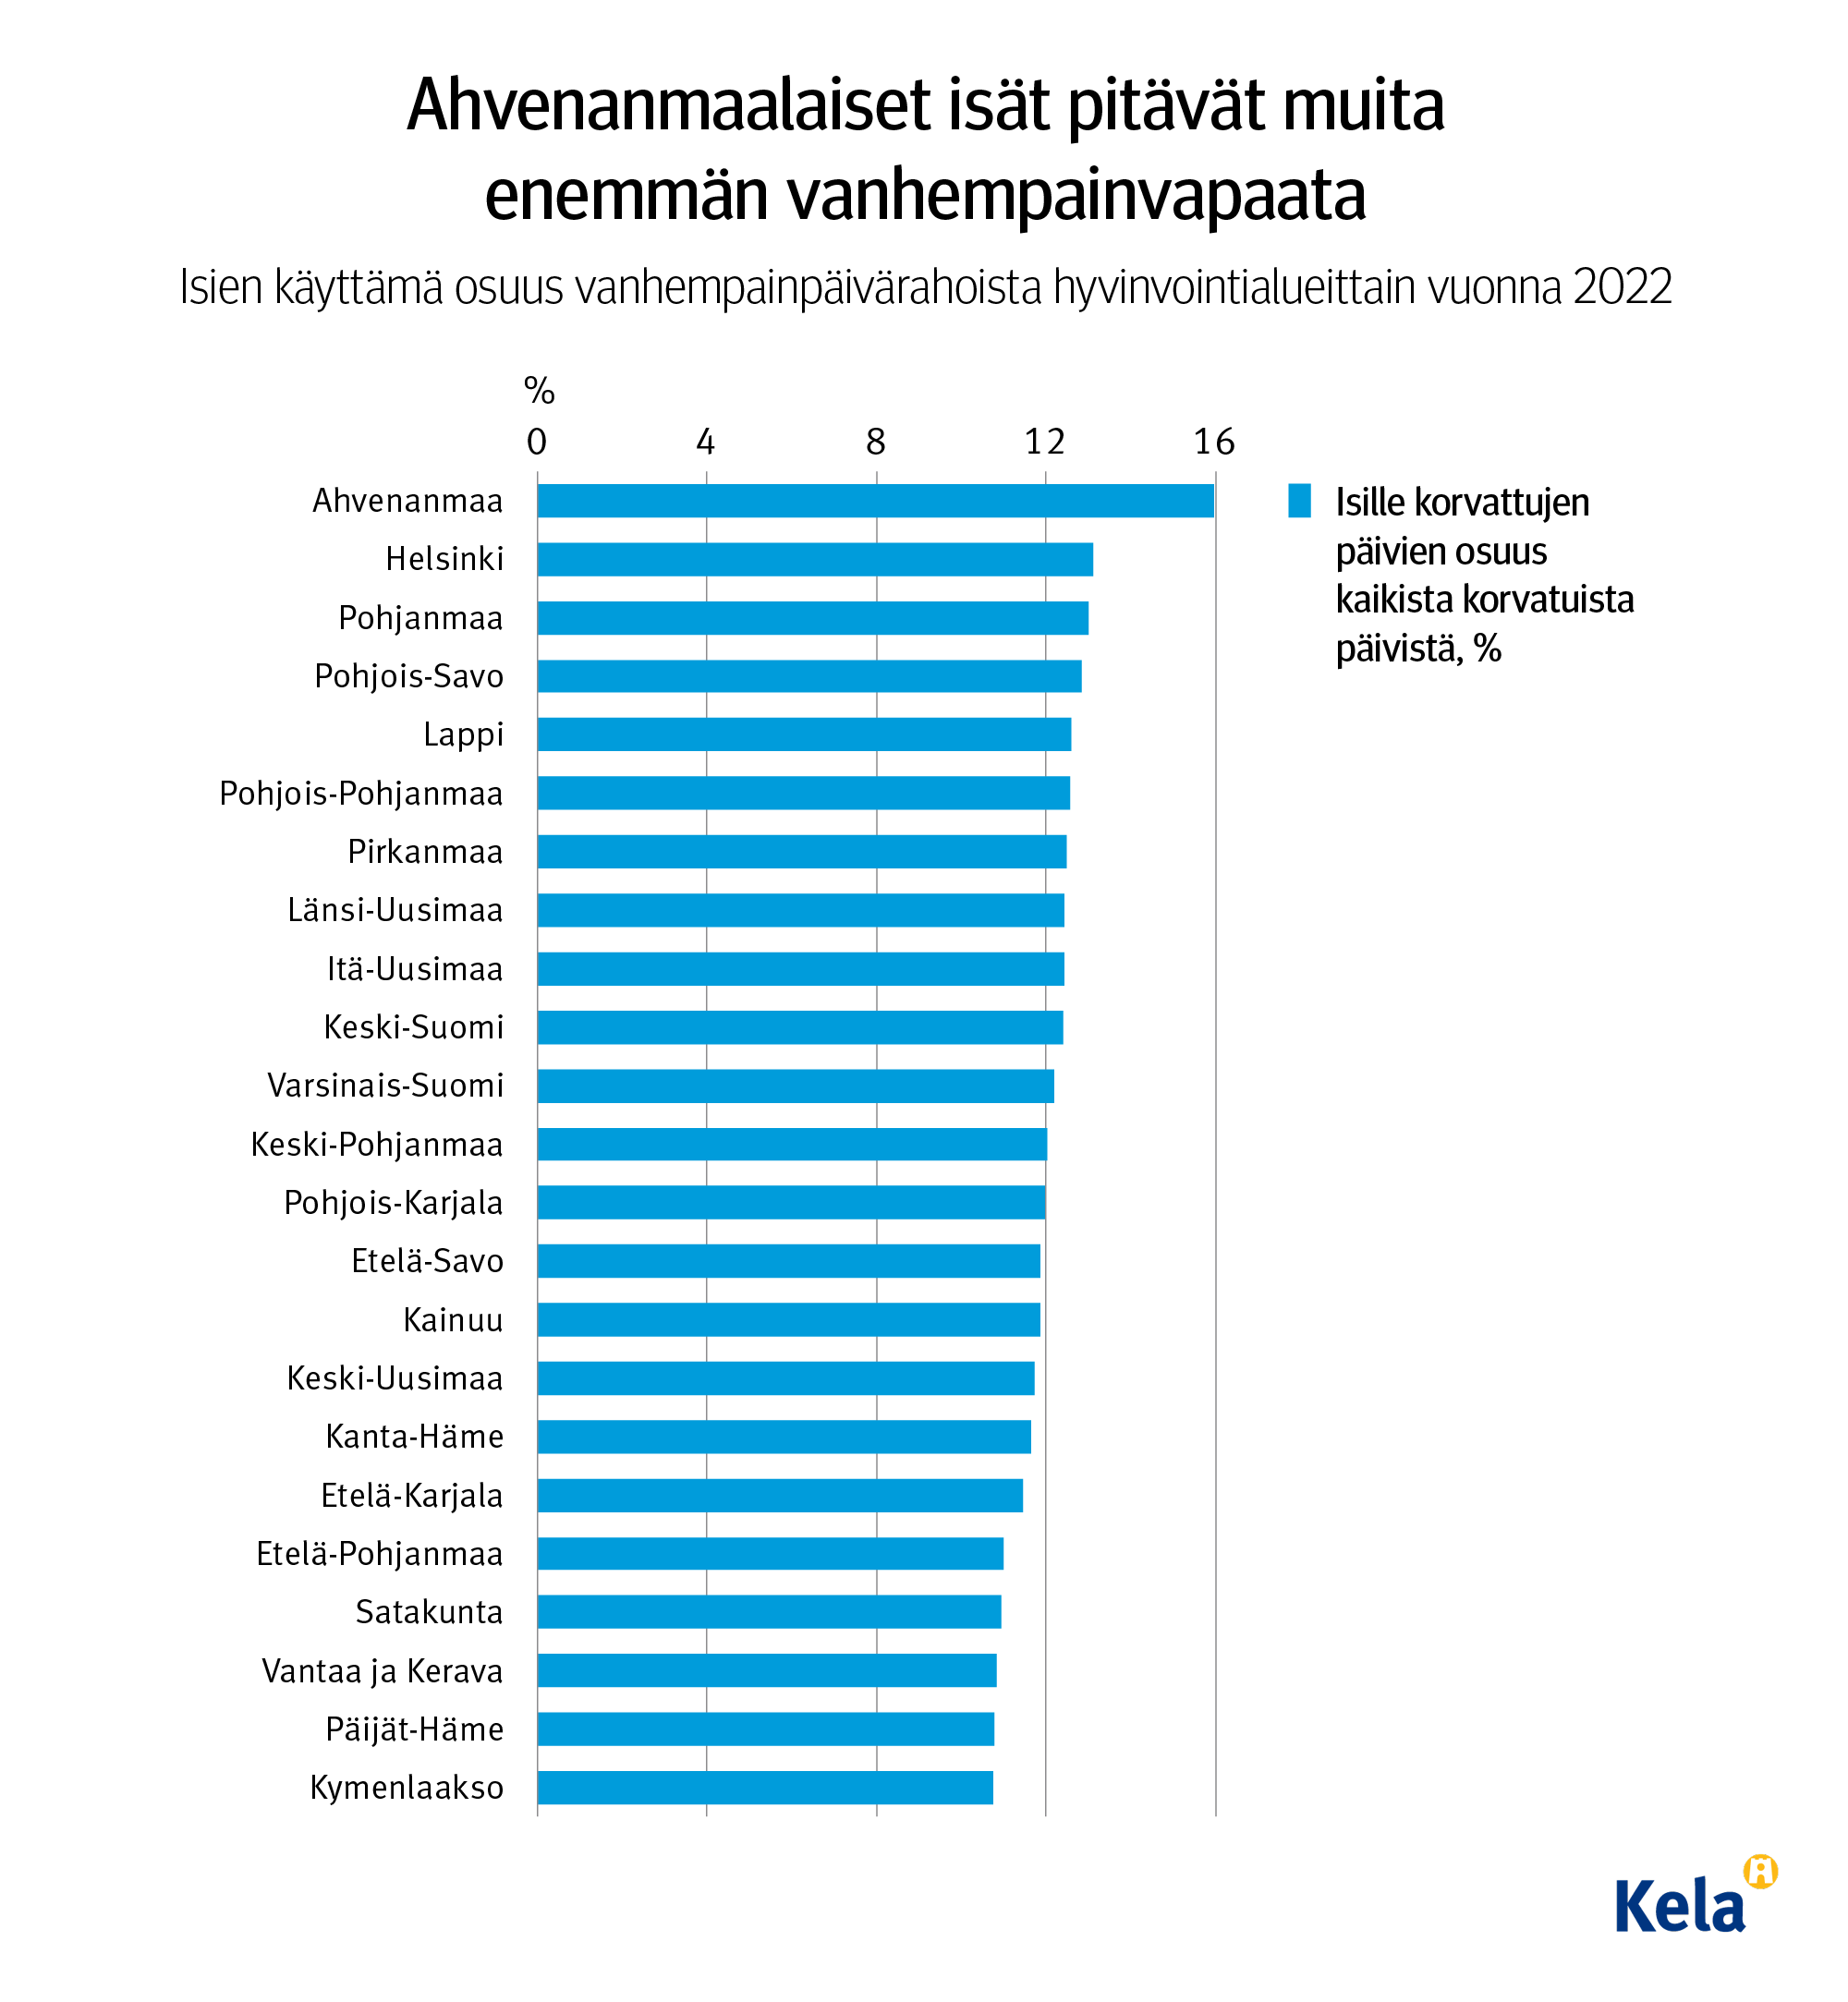 Kuvion otsikko: Ahvenanmaalaiset isät pitävät muita enemmän vanhempainvapaita. Kuvio näyttää, että suhteessa muihin hyvinvointilalueisiin Ahvenanmaalla isät pitävät enemmän vanhempainvapaita. Toisena on Helsinki. Vähiten vapaita isät pitävät Kymenlaaksossa.